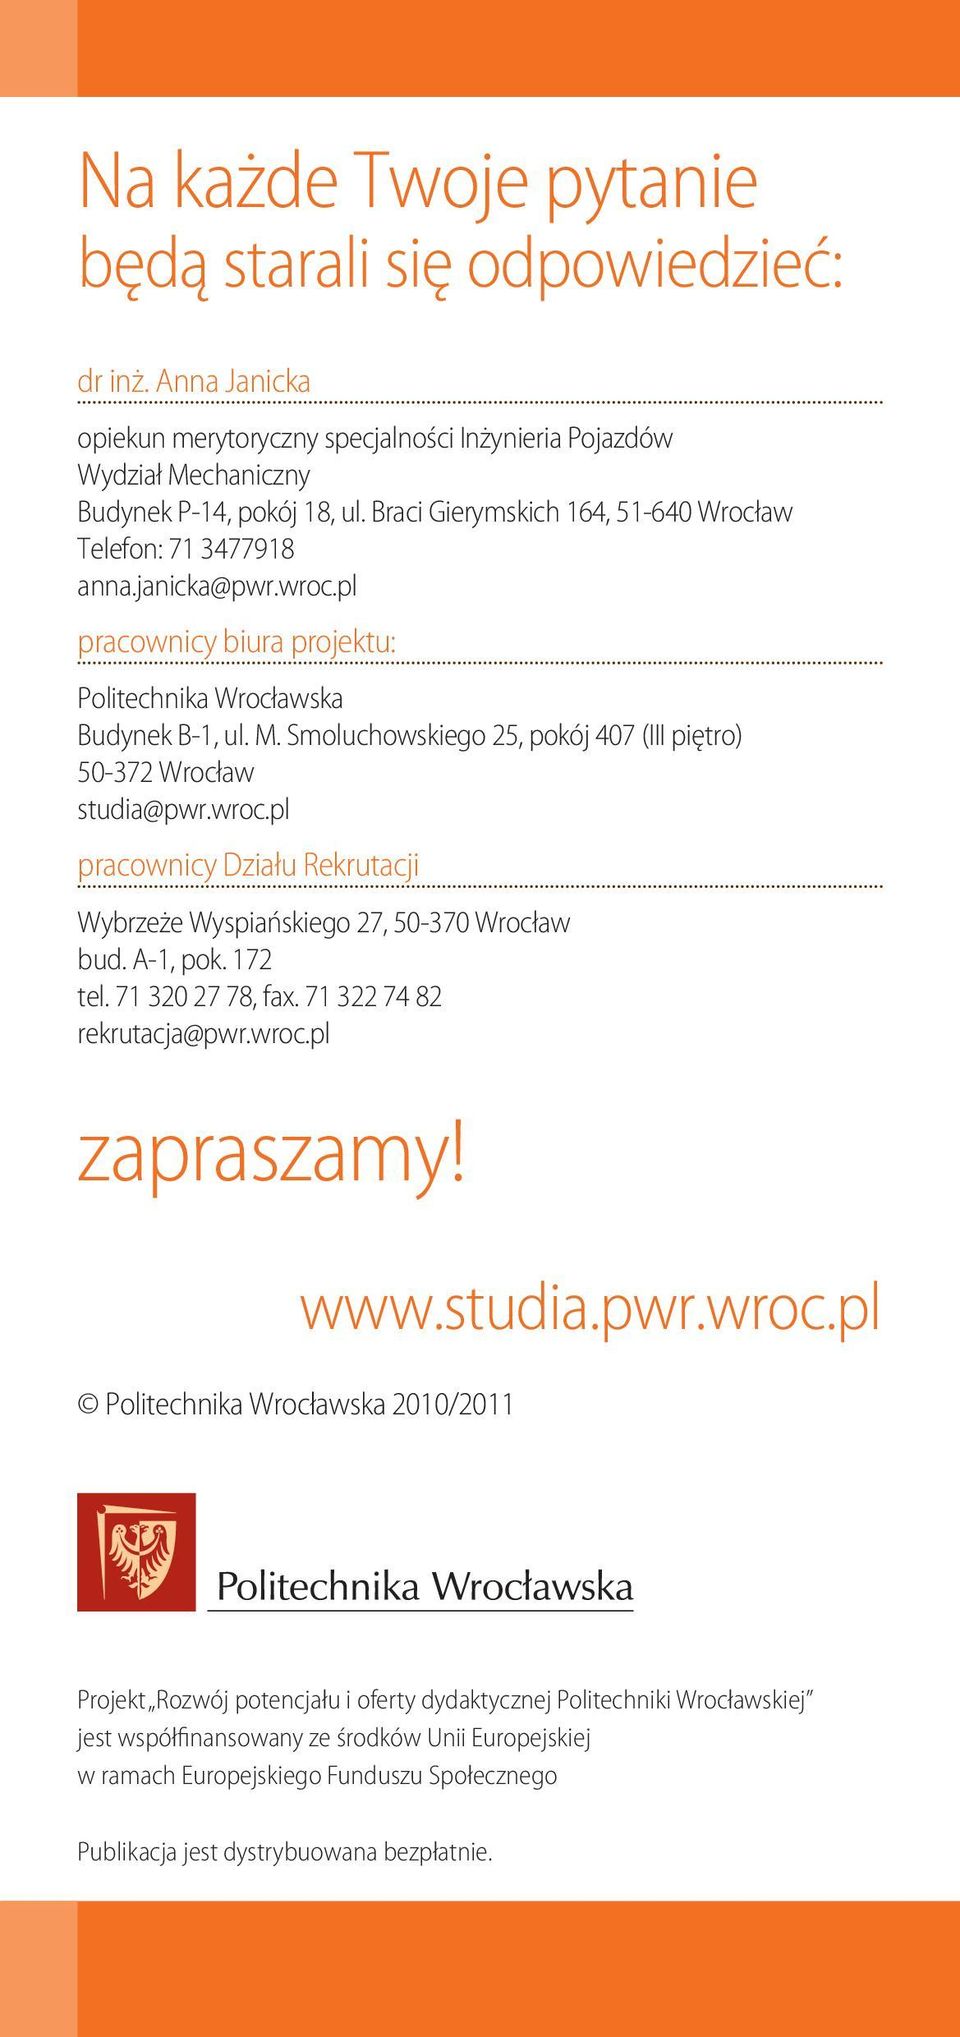 Smoluchowskiego 25, pokój 407 (III piętro) 50-372 Wrocław studia@pwr.wroc.pl pracownicy Działu Rekrutacji Wybrzeże Wyspiańskiego 27, 50-370 Wrocław bud. A-1, pok. 172 tel. 71 320 27 78, fax.